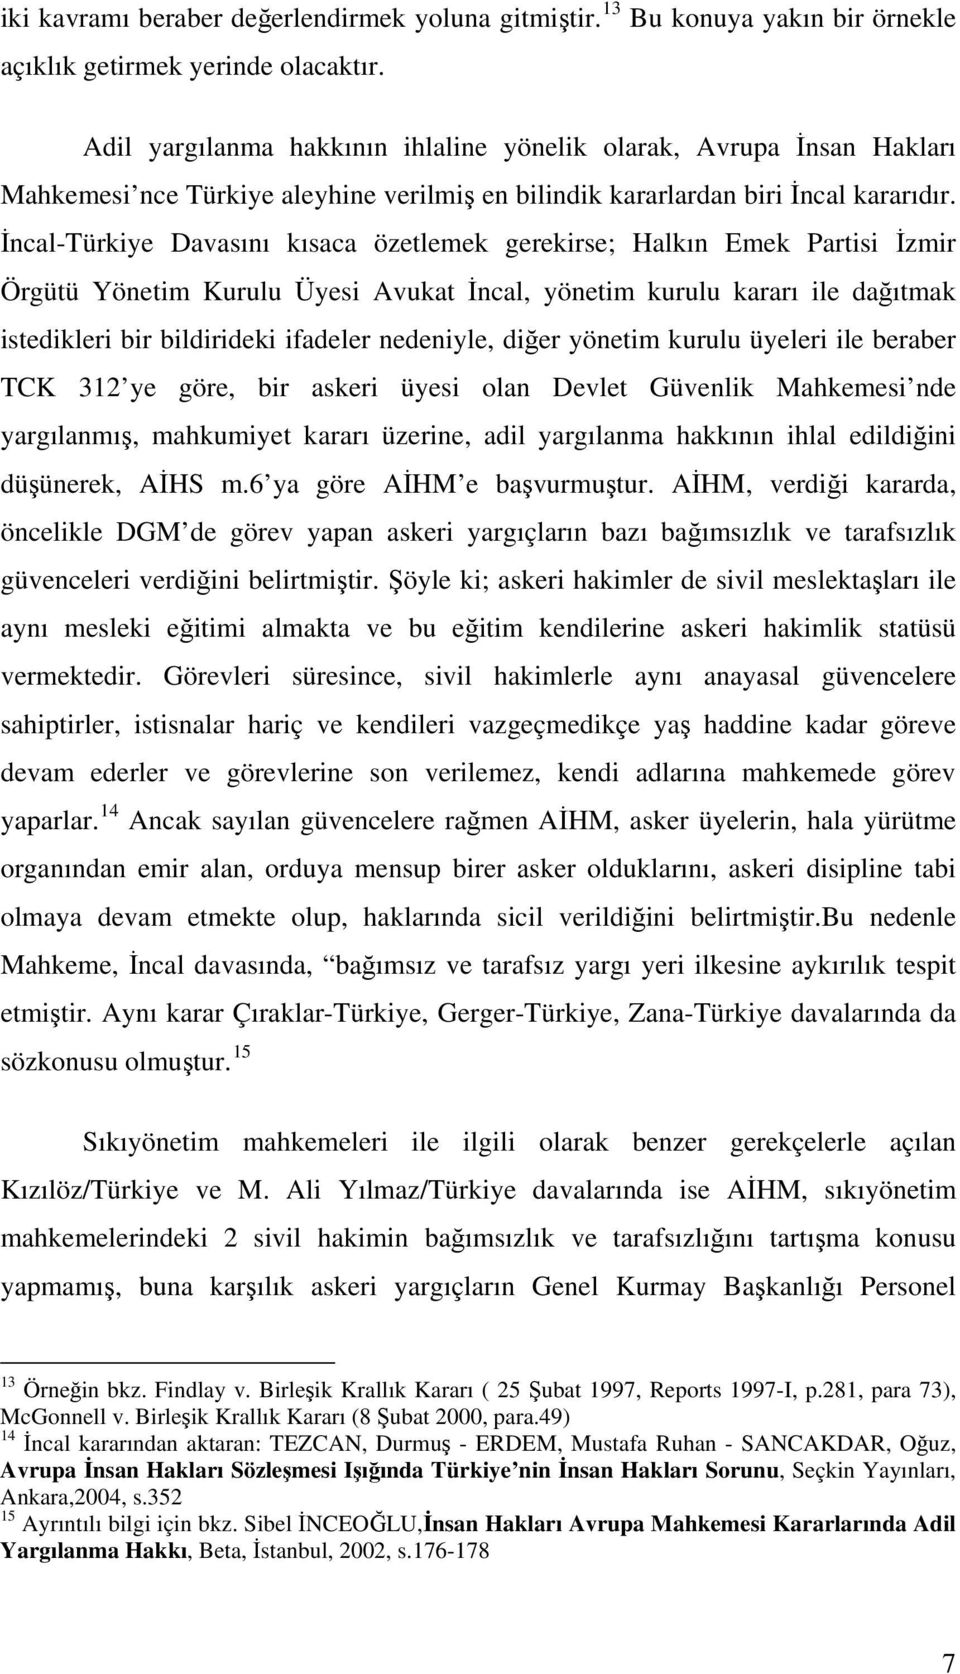 İncal-Türkiye Davasını kısaca özetlemek gerekirse; Halkın Emek Partisi İzmir Örgütü Yönetim Kurulu Üyesi Avukat İncal, yönetim kurulu kararı ile dağıtmak istedikleri bir bildirideki ifadeler